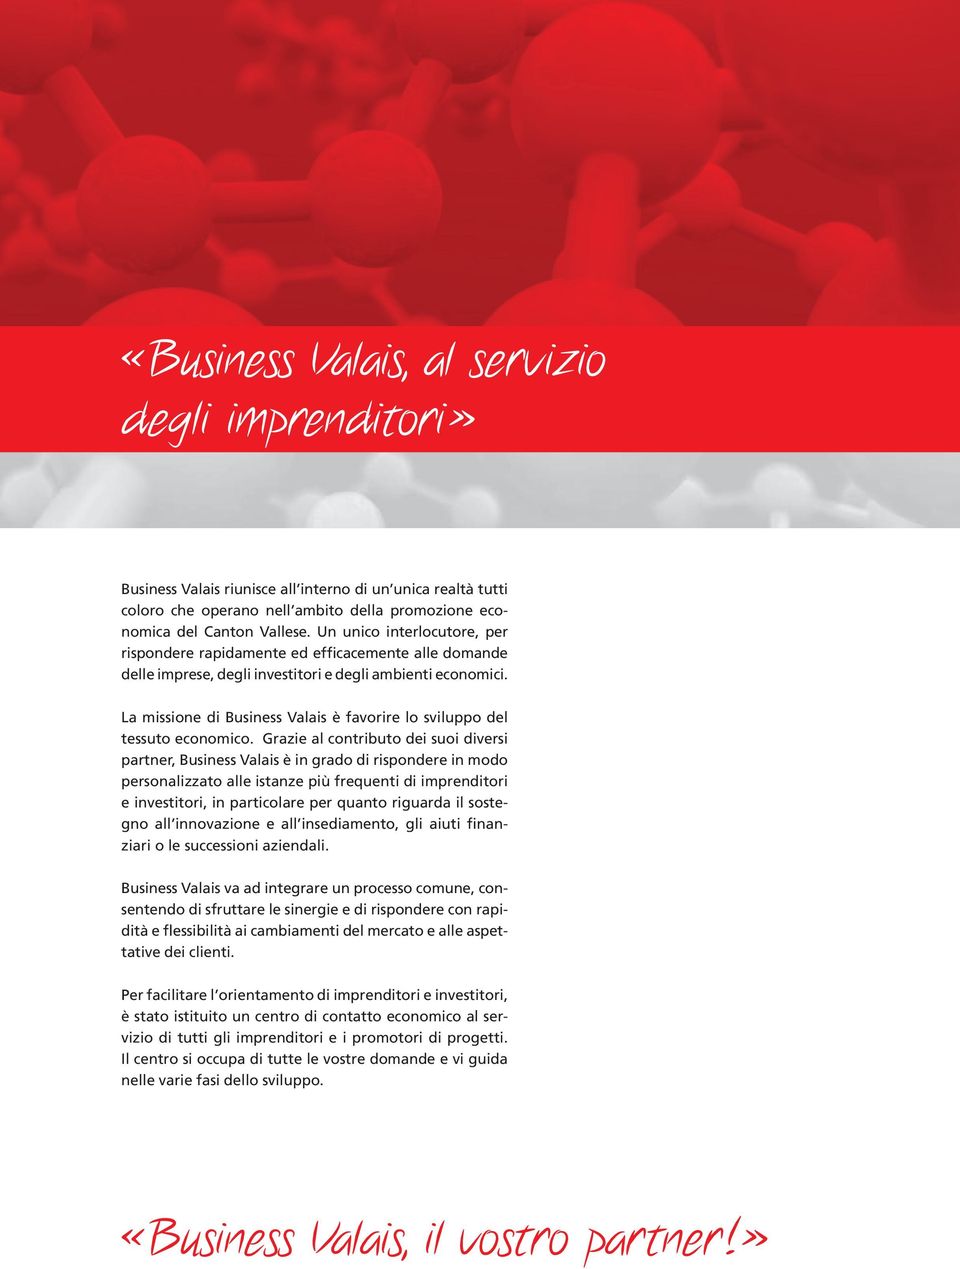 La missione di Business Valais è favorire lo sviluppo del tessuto economico.